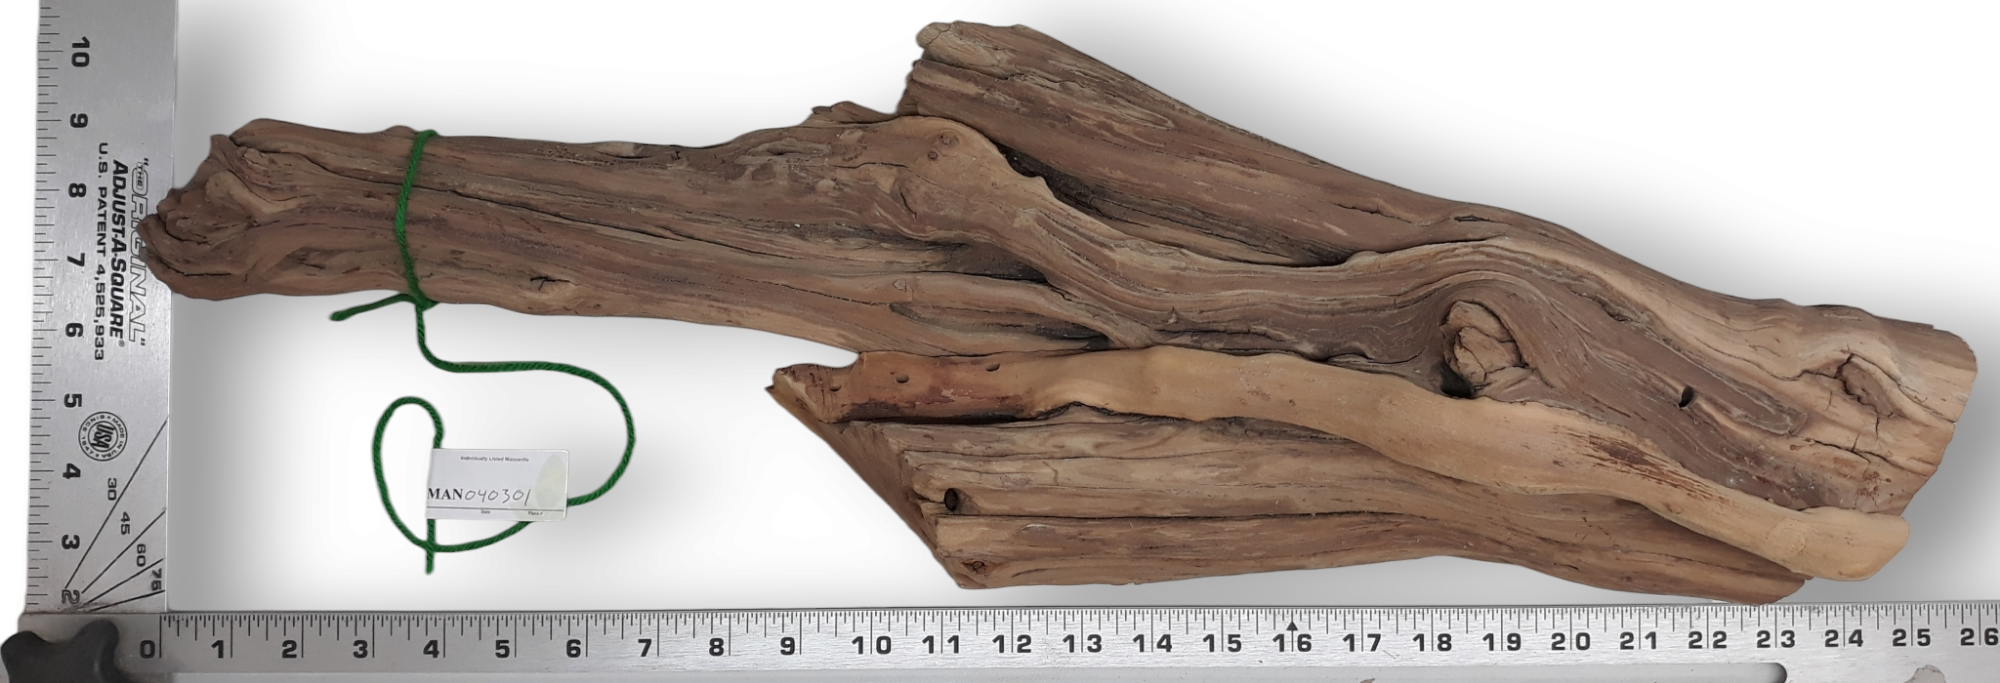 Manzanita Wood (MAN040301)